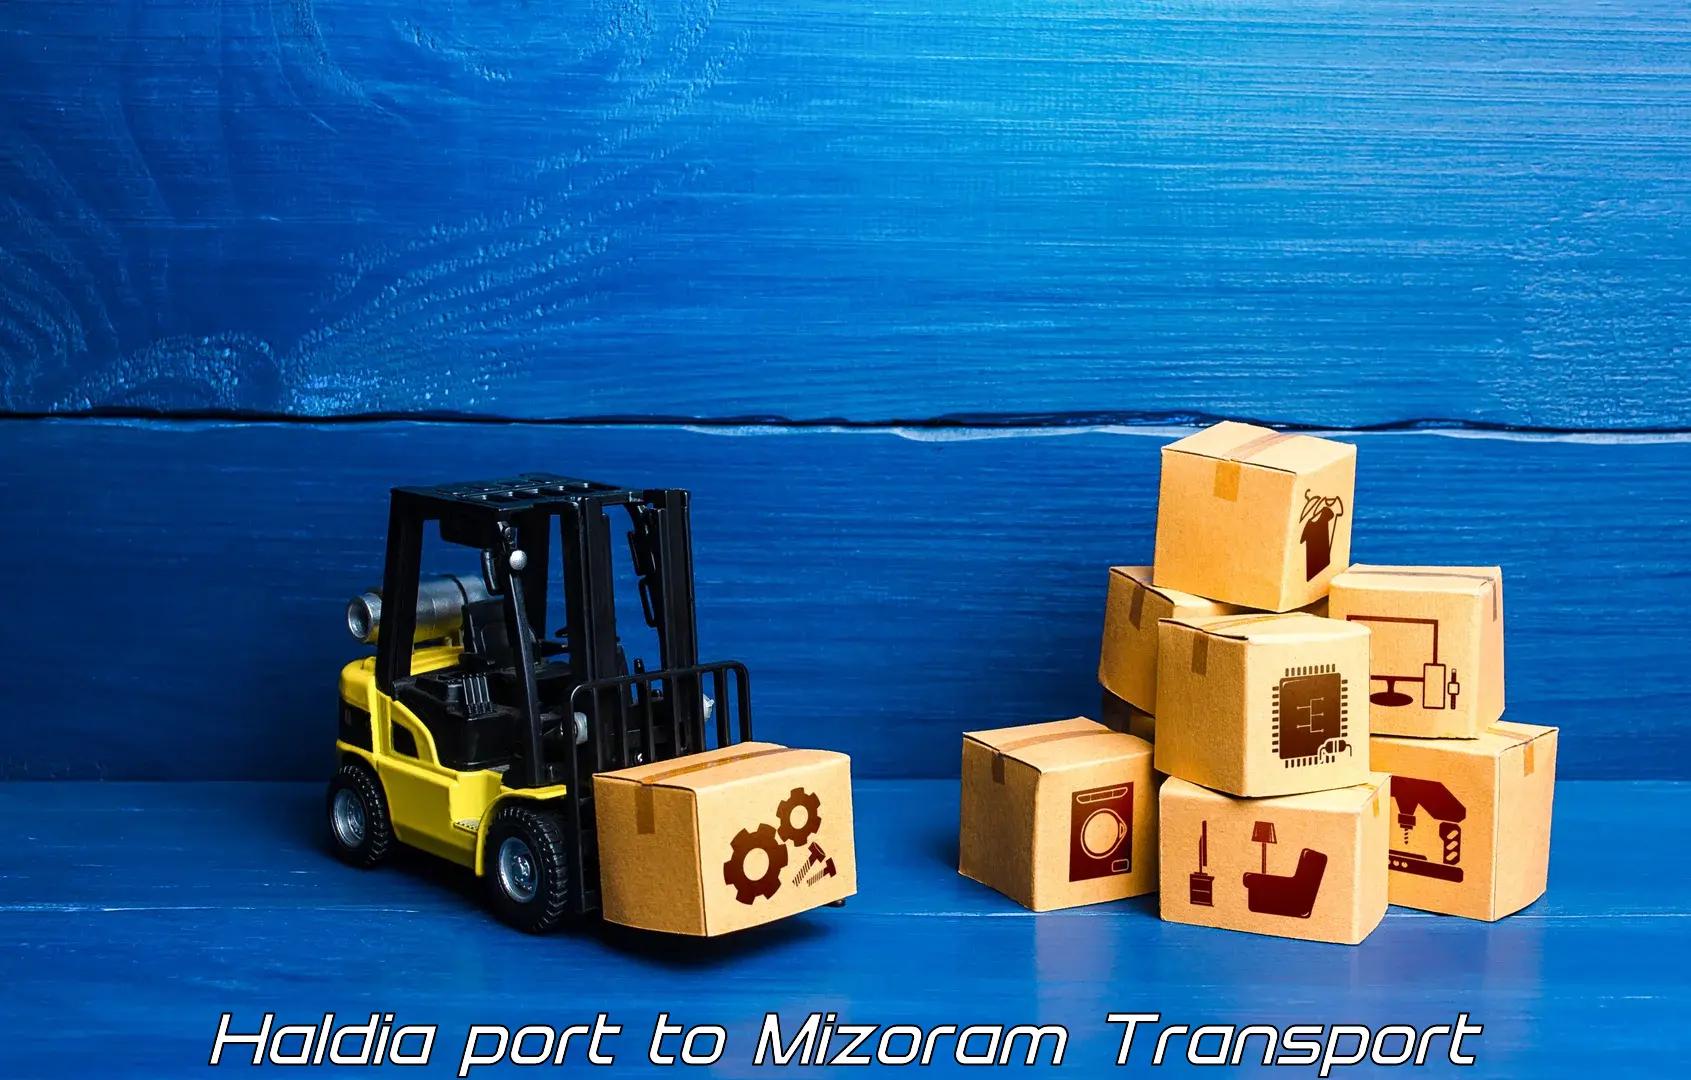 Pick up transport service Haldia port to Mizoram